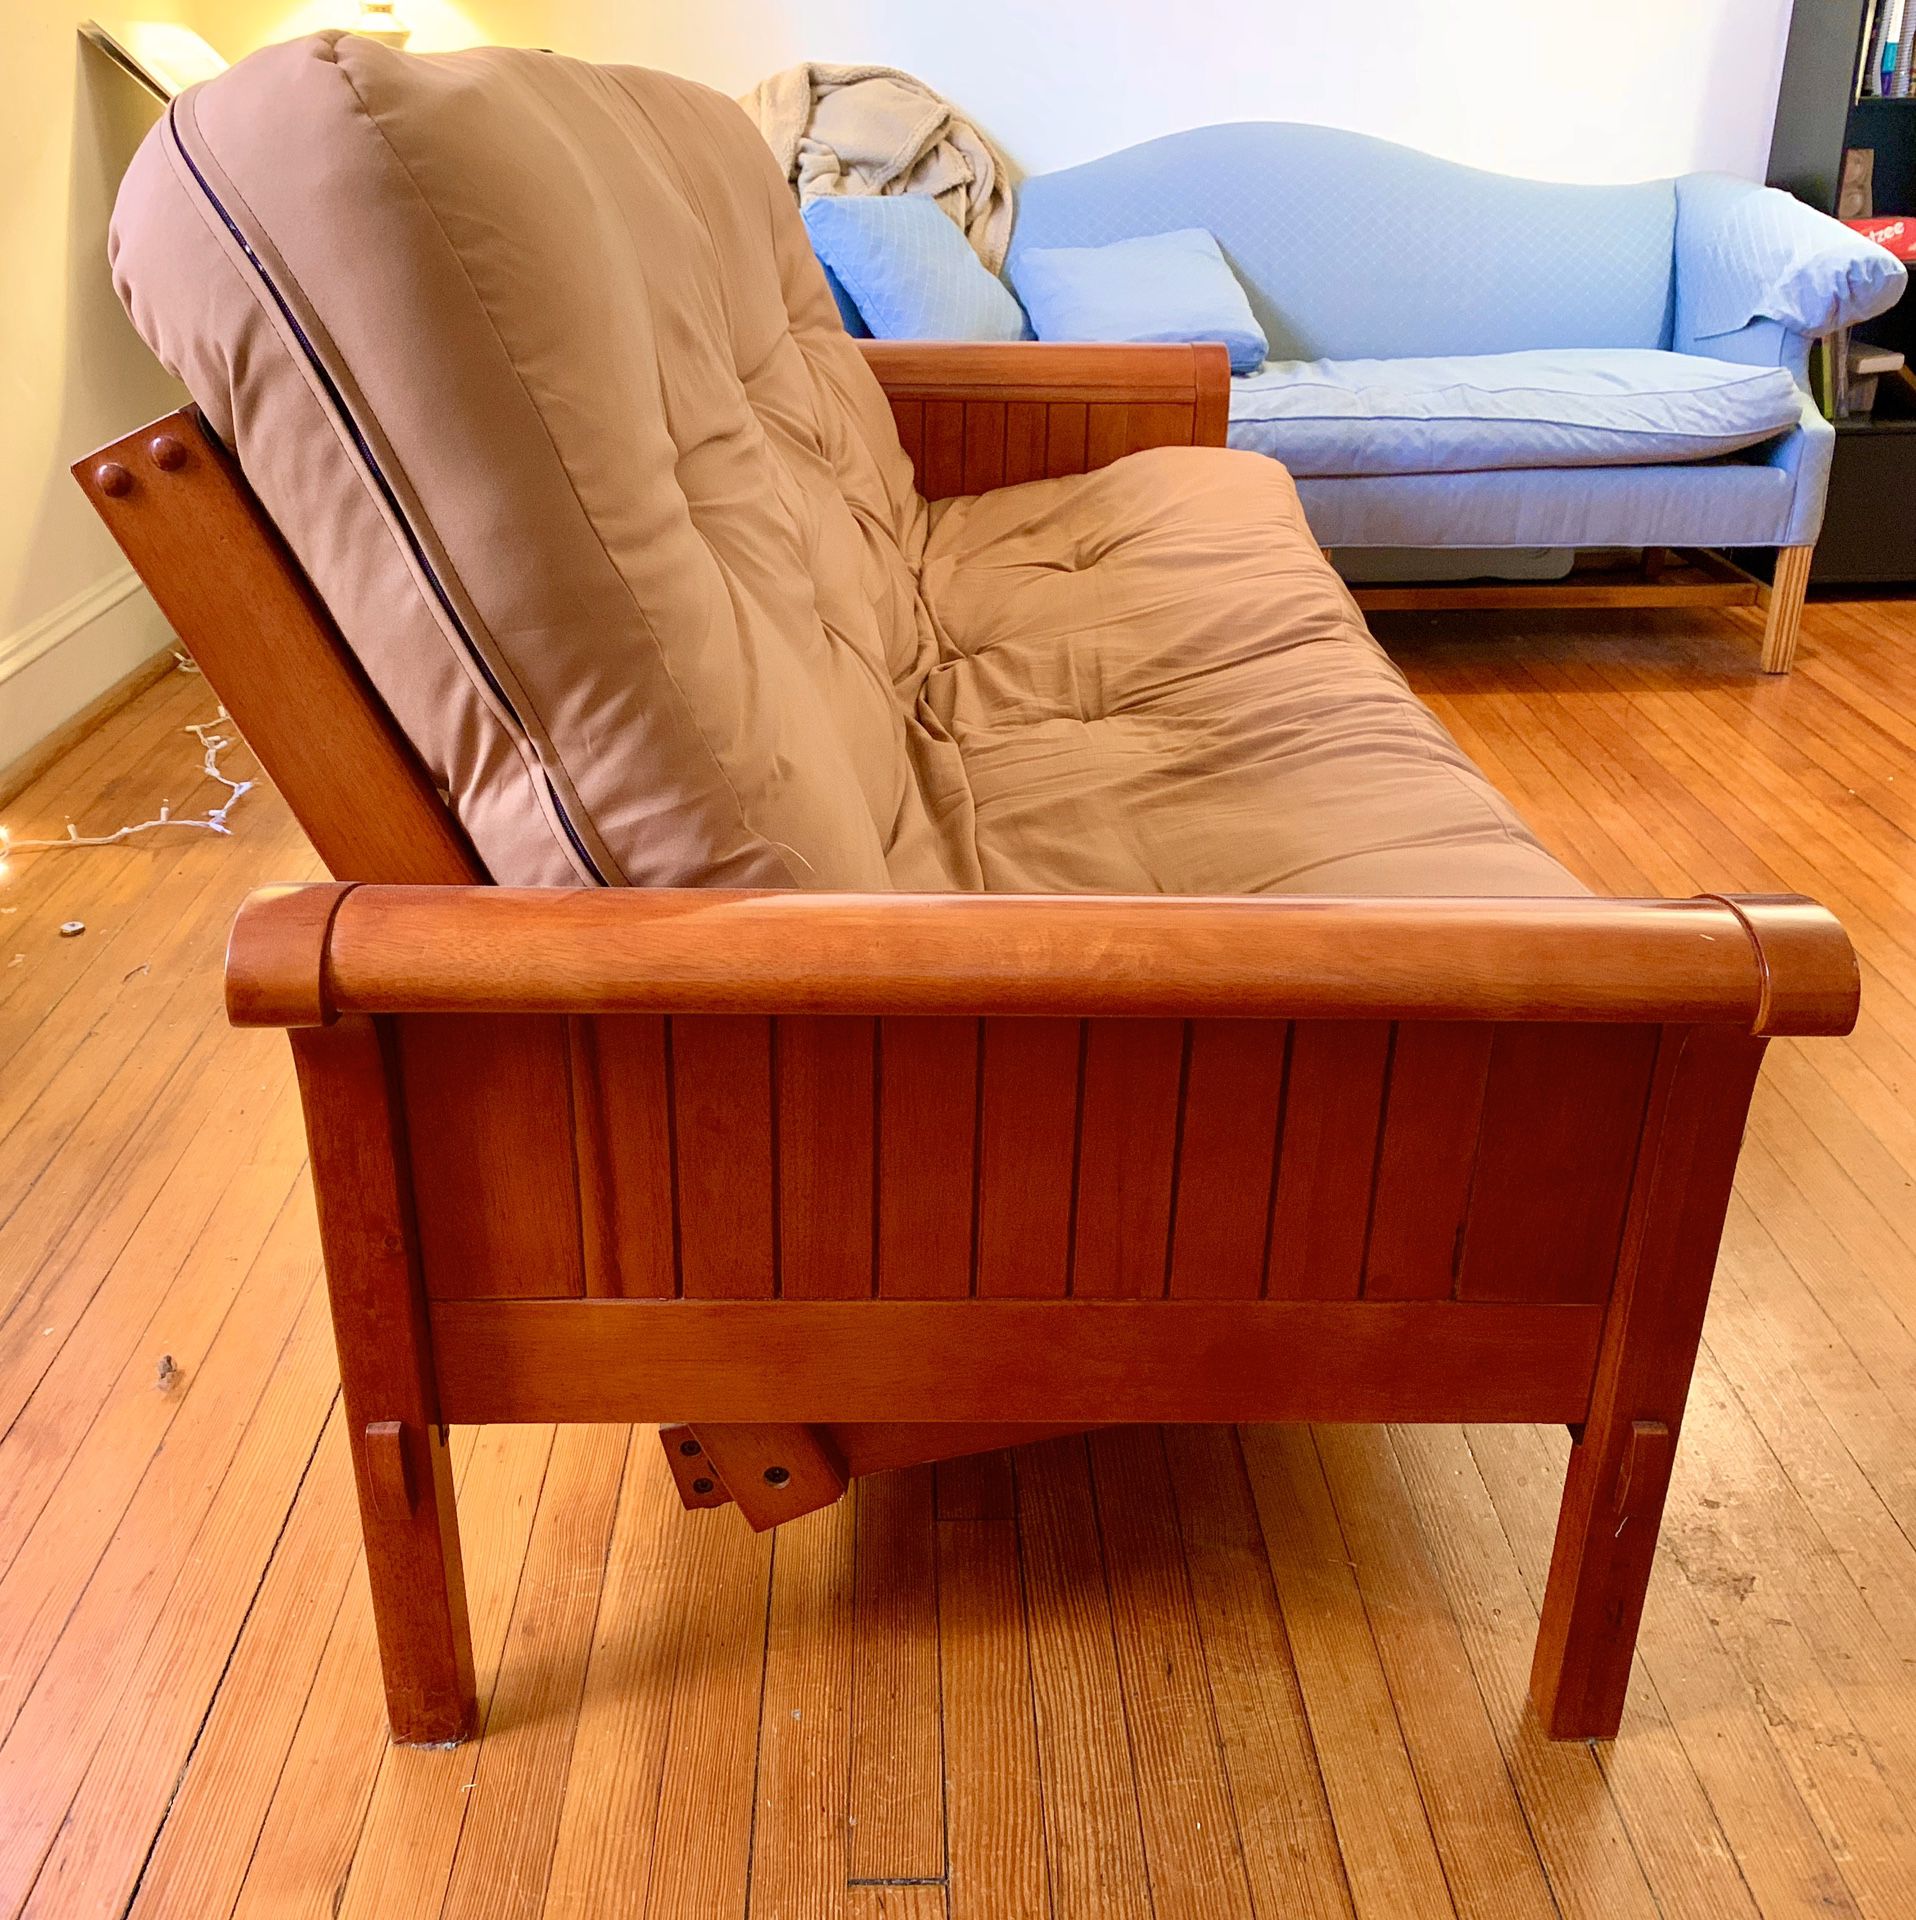 Queen sized wooden futon